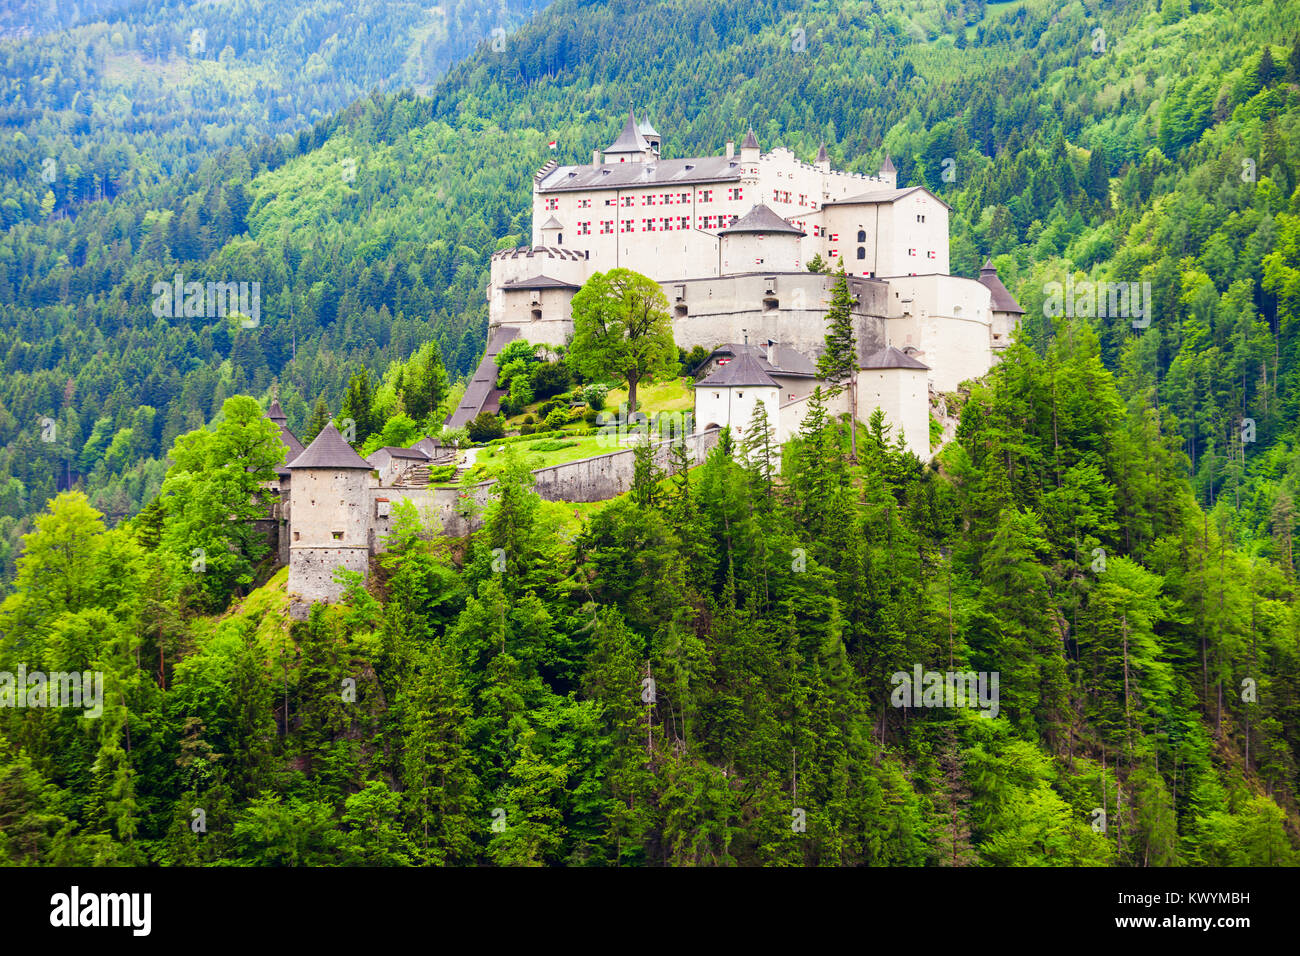 Château de Hohenwerfen ou Festung est une cité médiévale de Hohenwerfen château rocher surplombant la ville autrichienne Werfen dans vallée de la Salzach près de Salzbourg, Autriche Banque D'Images